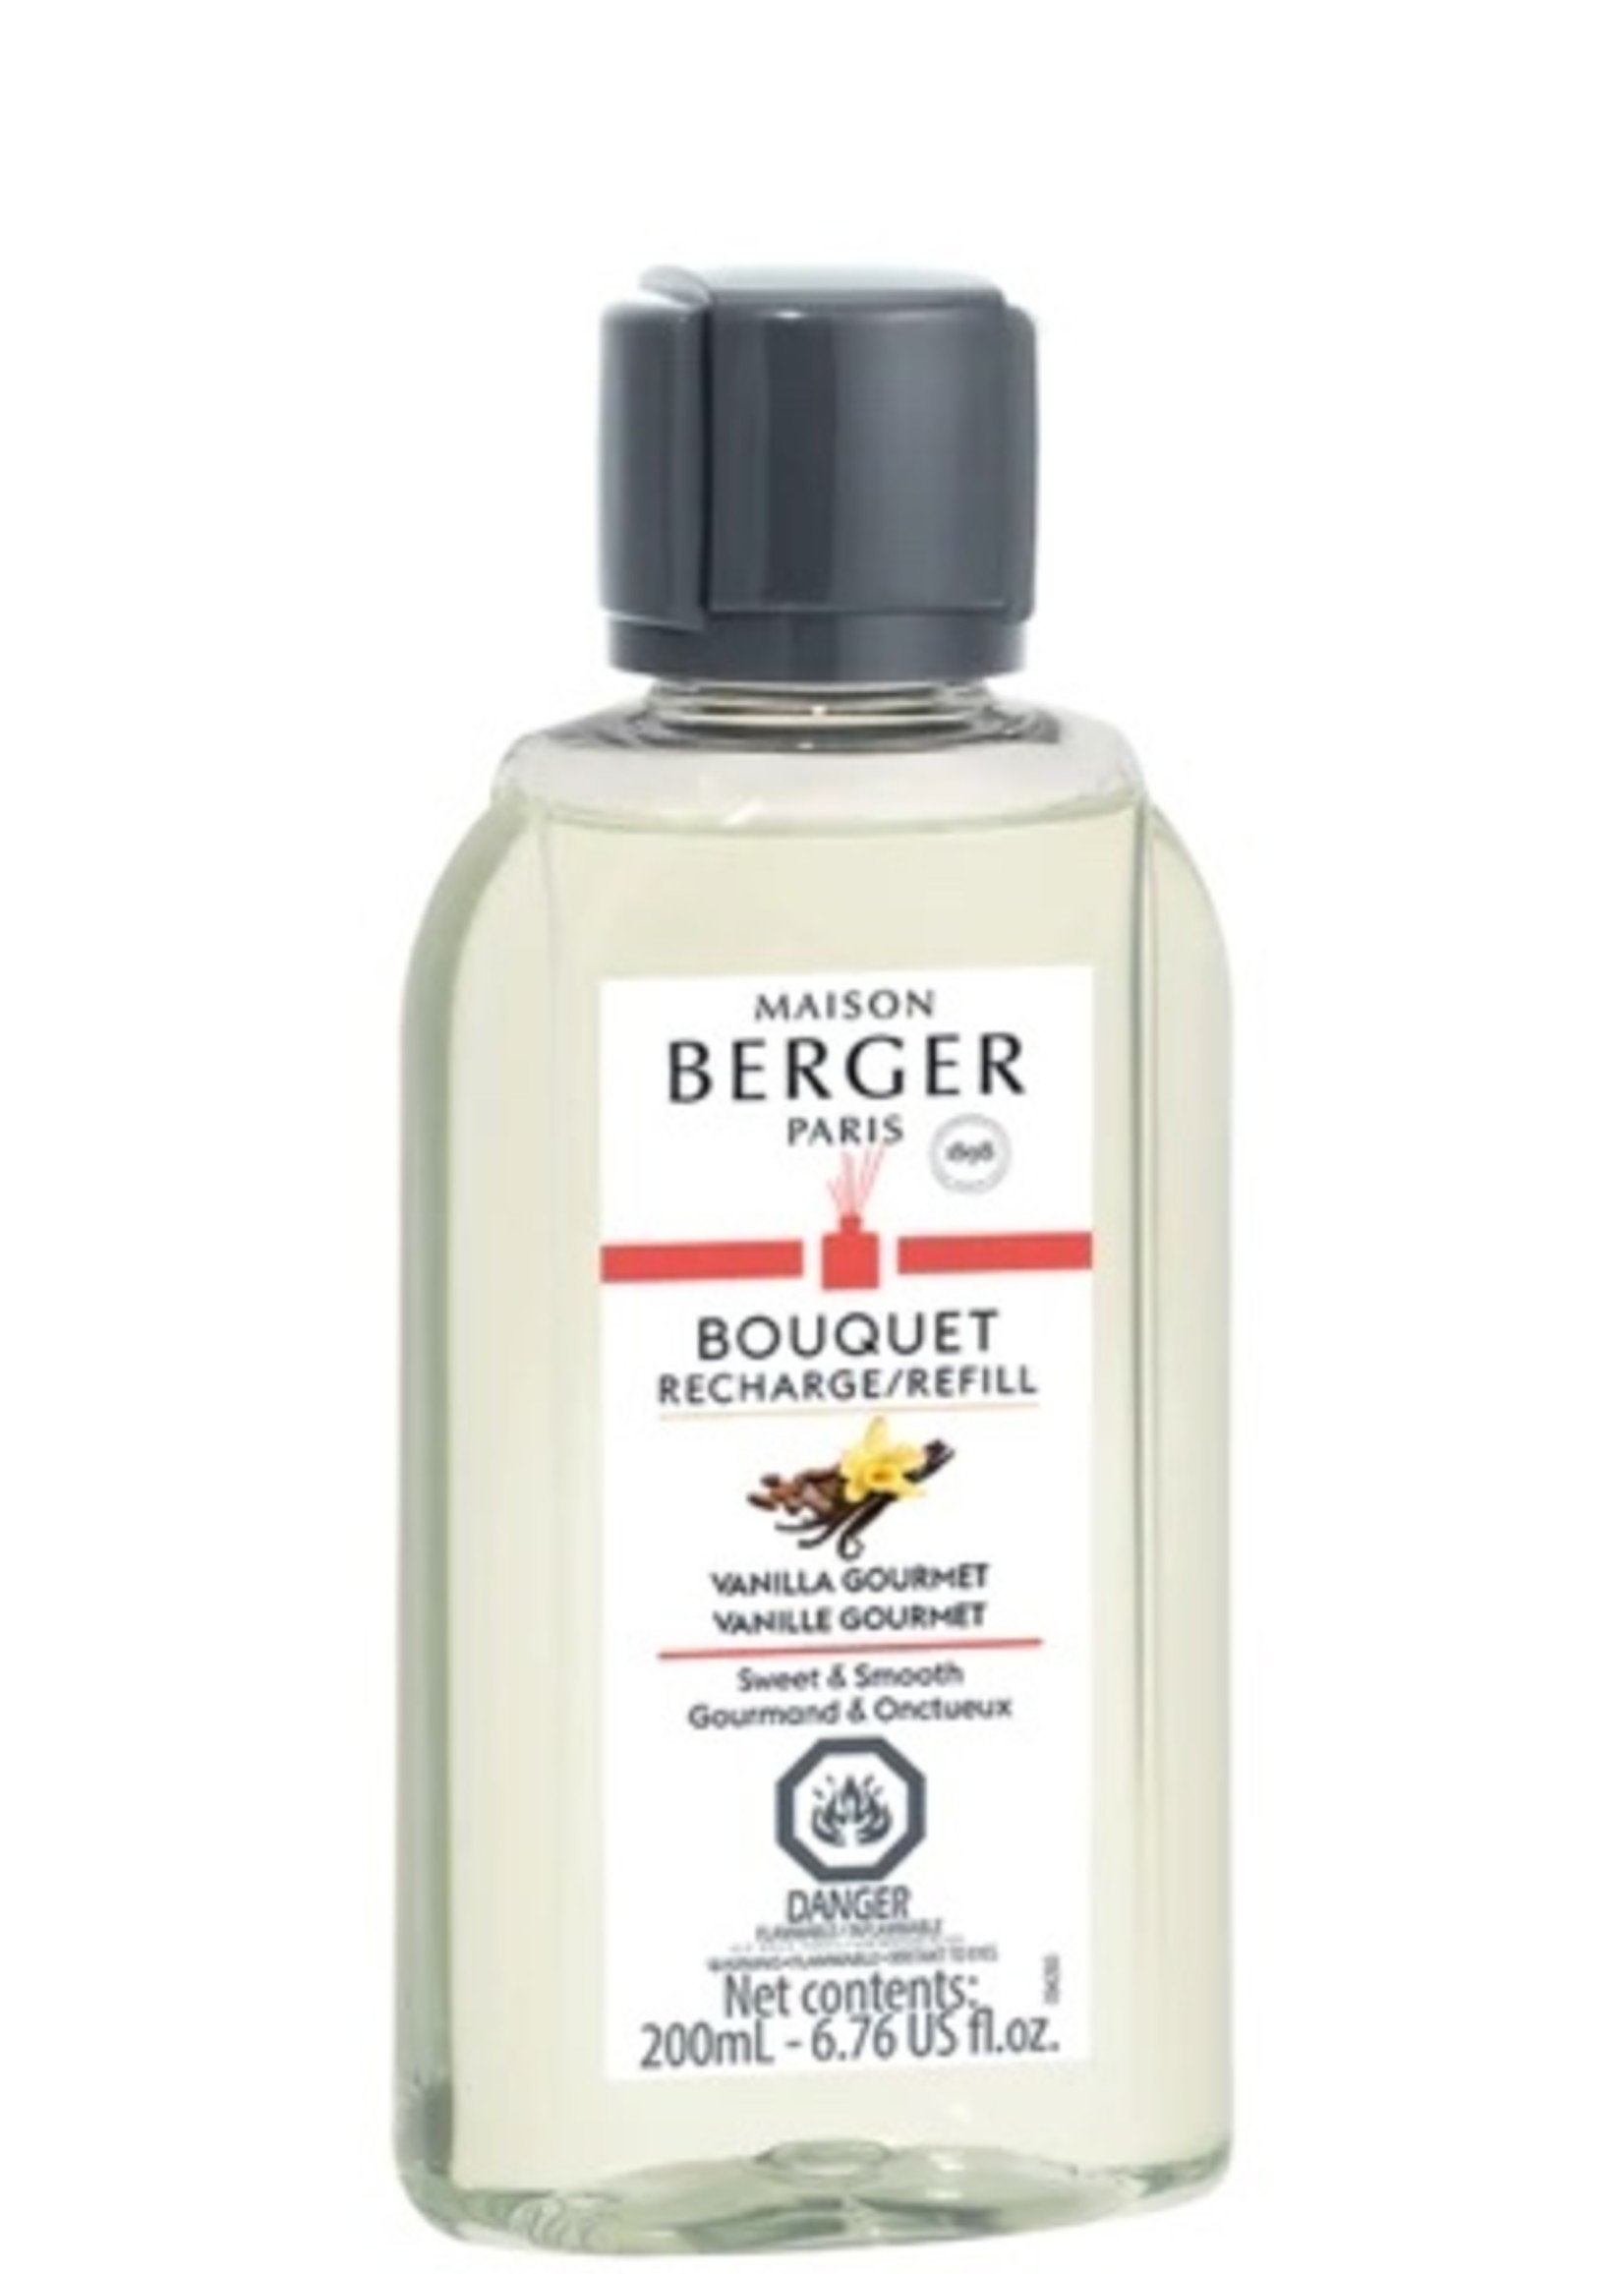 Maison Berger Bouquet Refill * Vanilla Gourmet 200ml